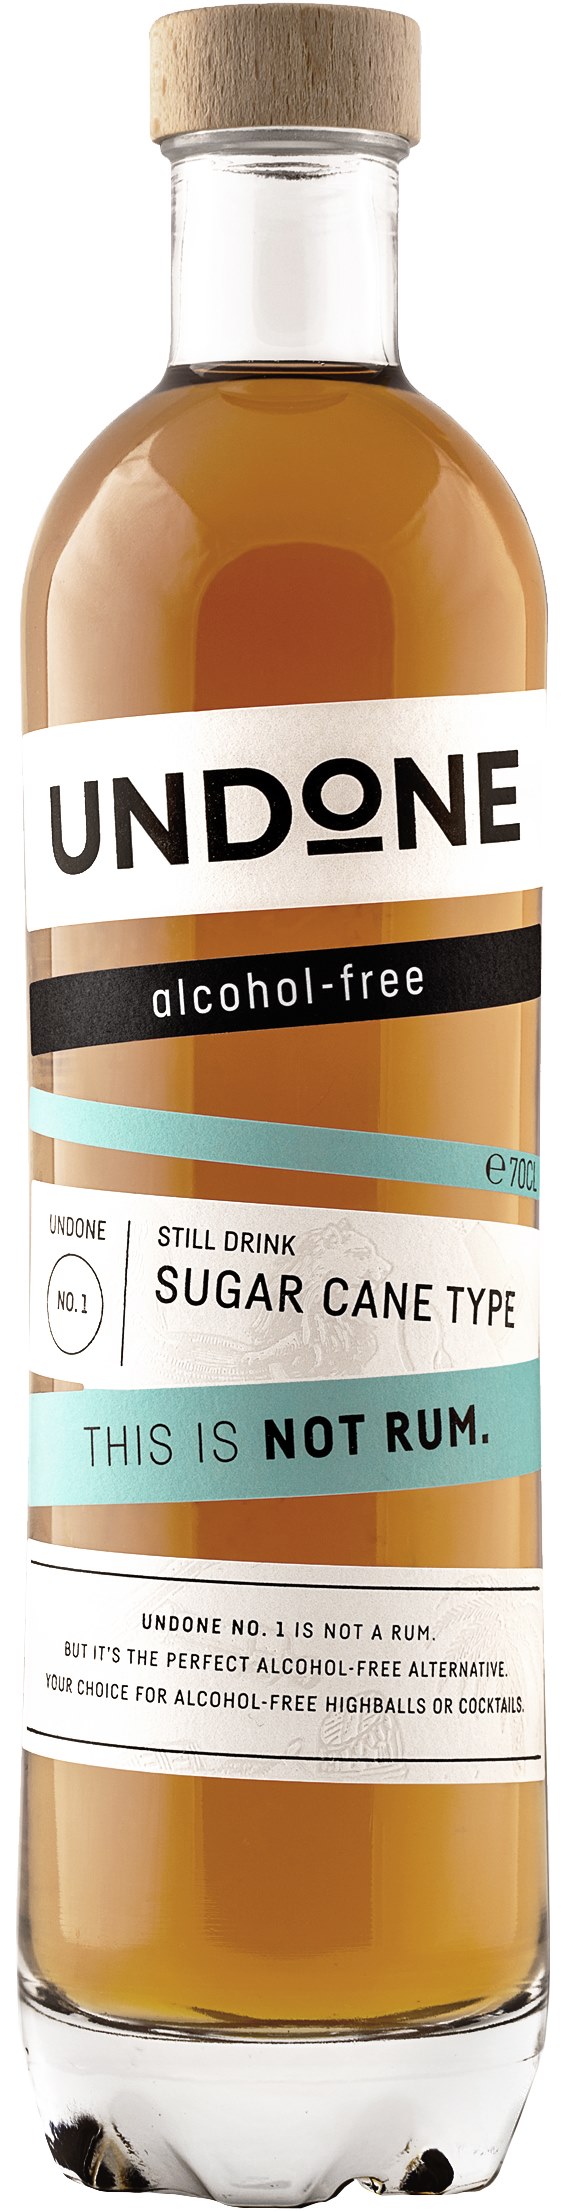 Undone No 1 Sugar Cane Type - THIS IS NOT RUM_Freisteller